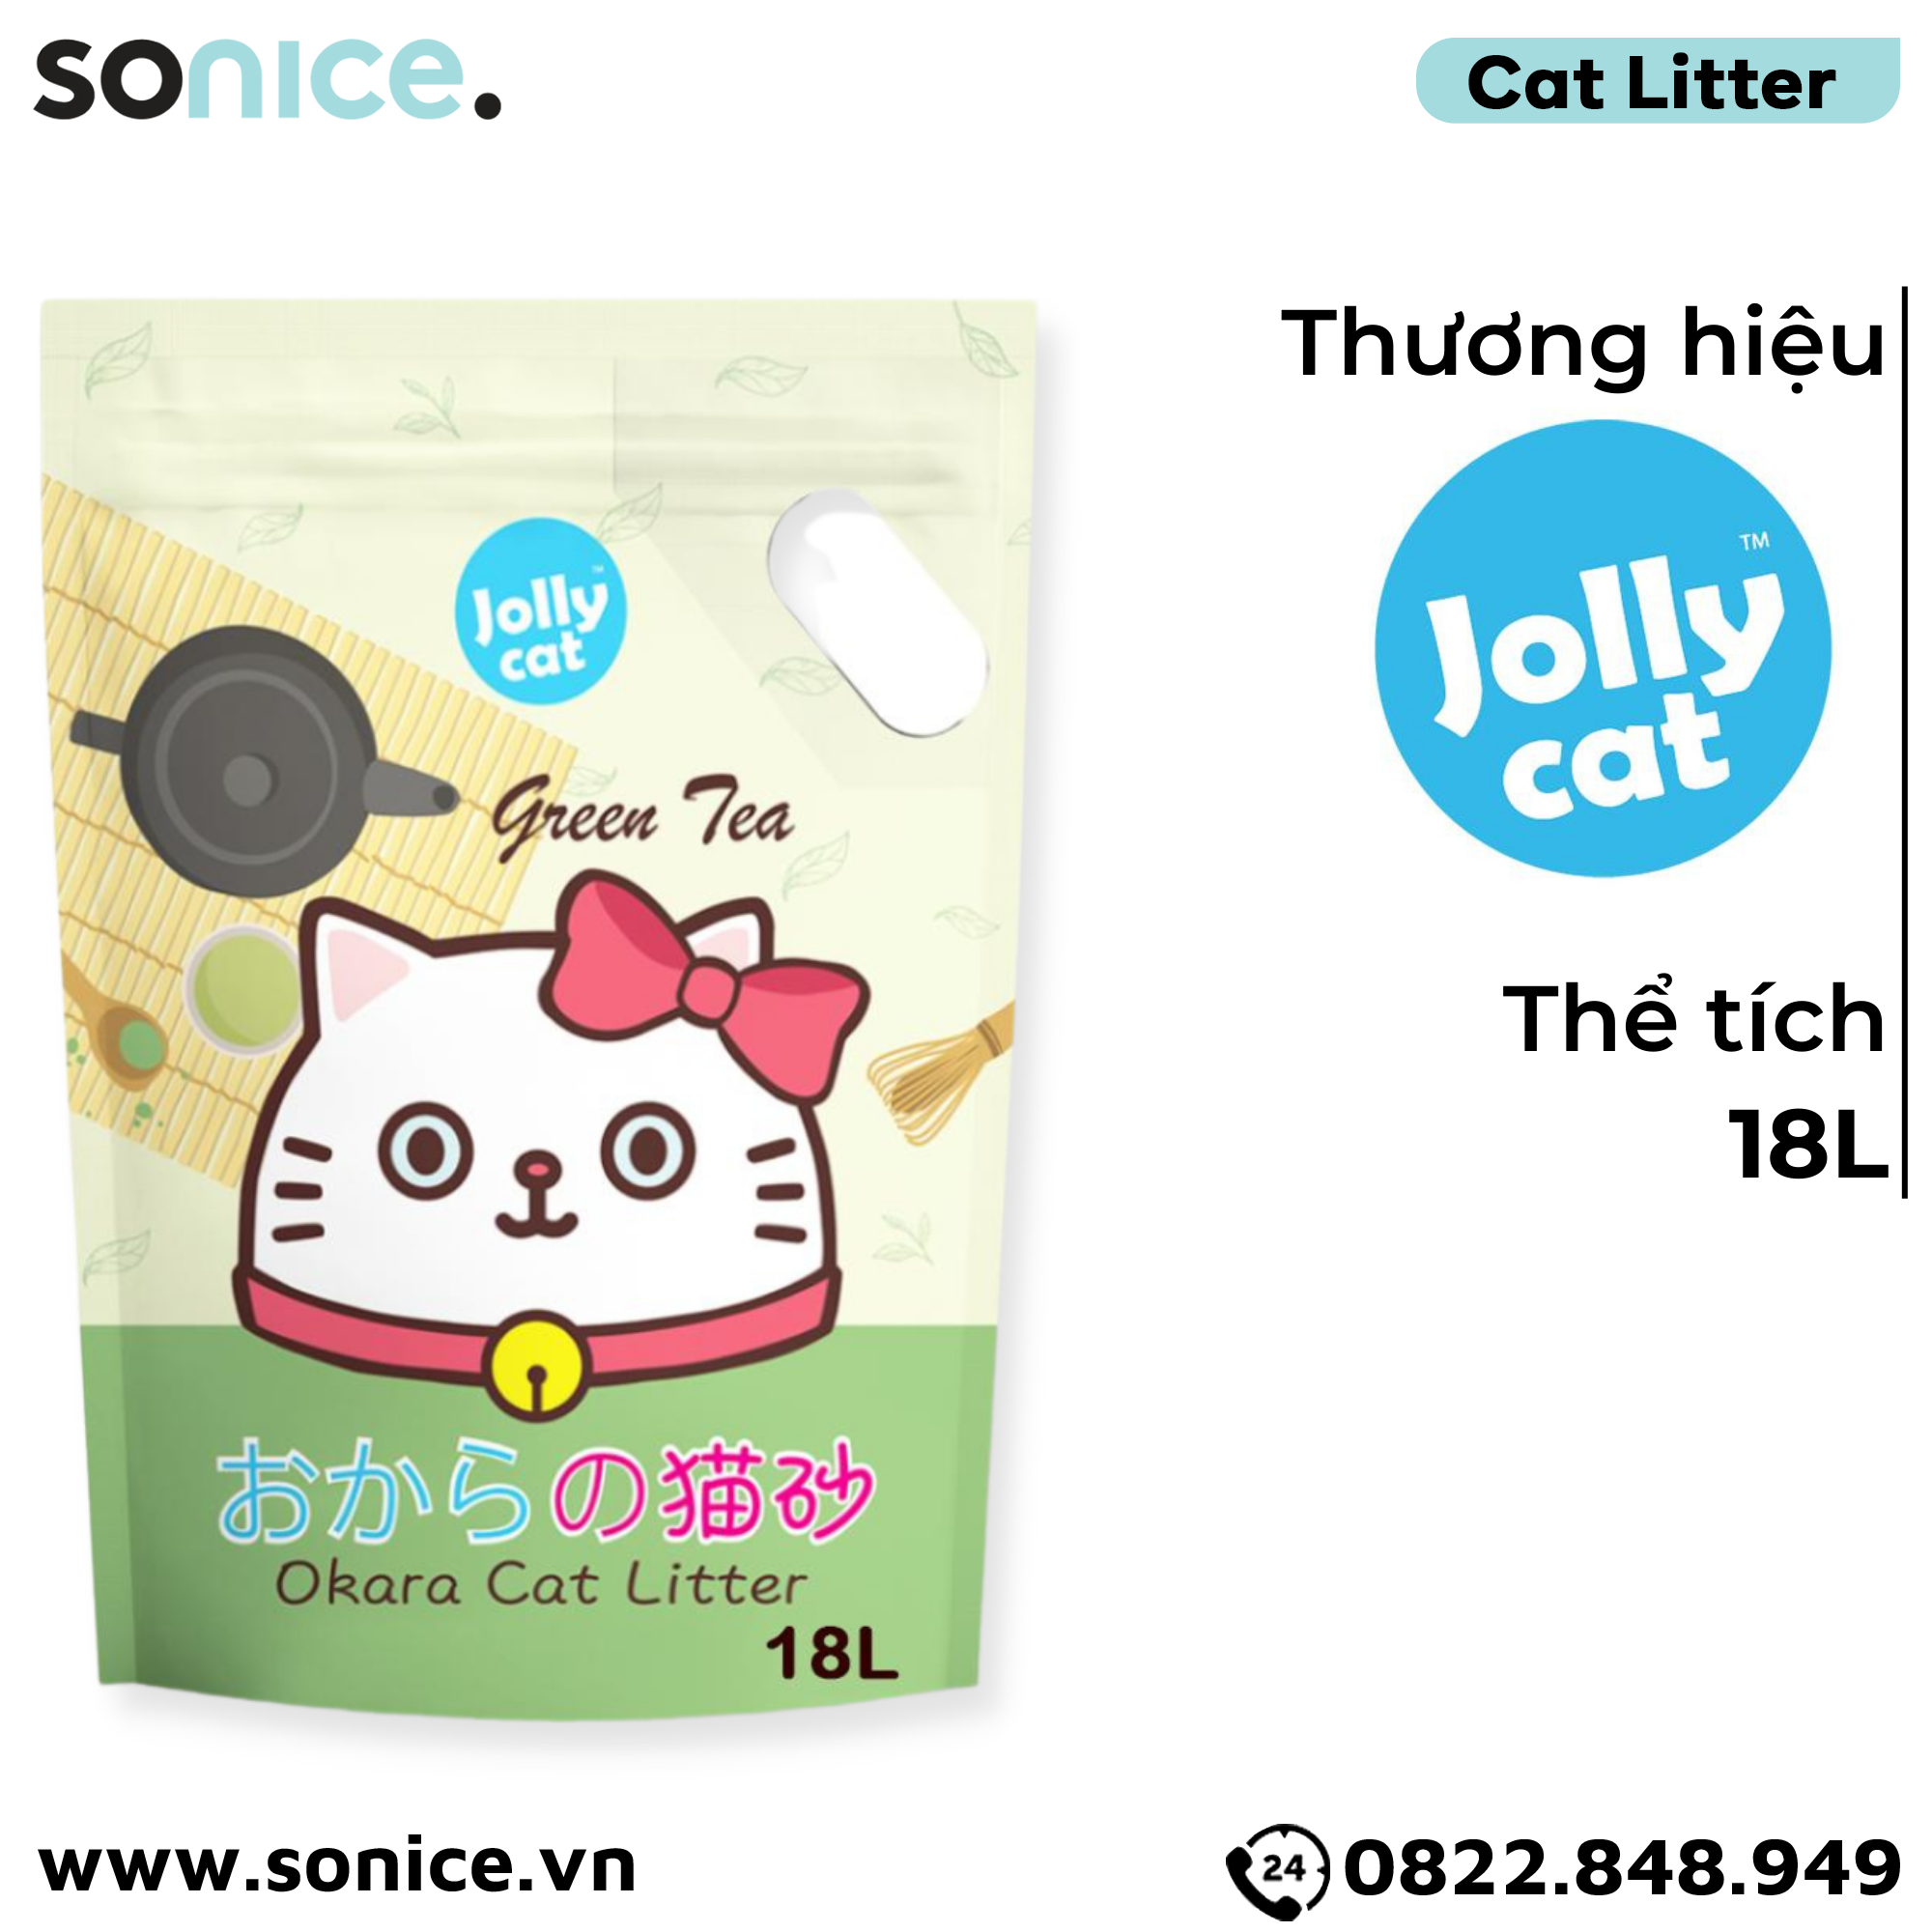  Cát vệ sinh Premium Tofu Jolly Cat Litter Green Tea 18L - Làm từ đậu nành soya hương trà xanh SONICE. 